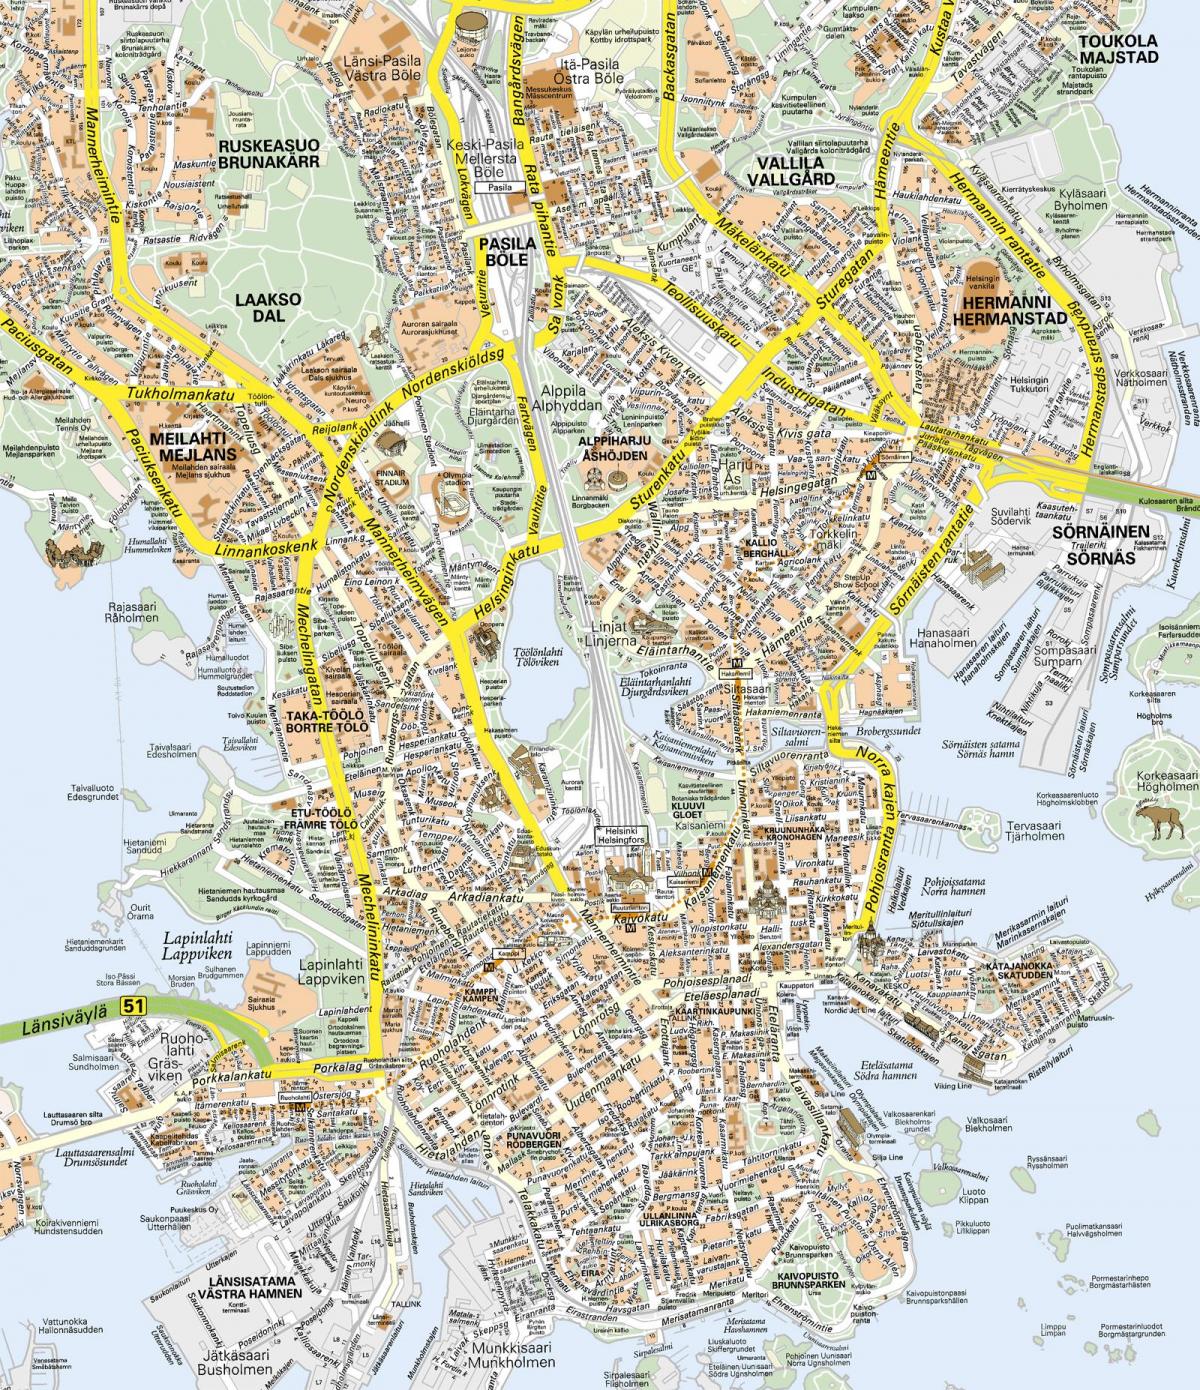 Plan du centre ville de Helsinki